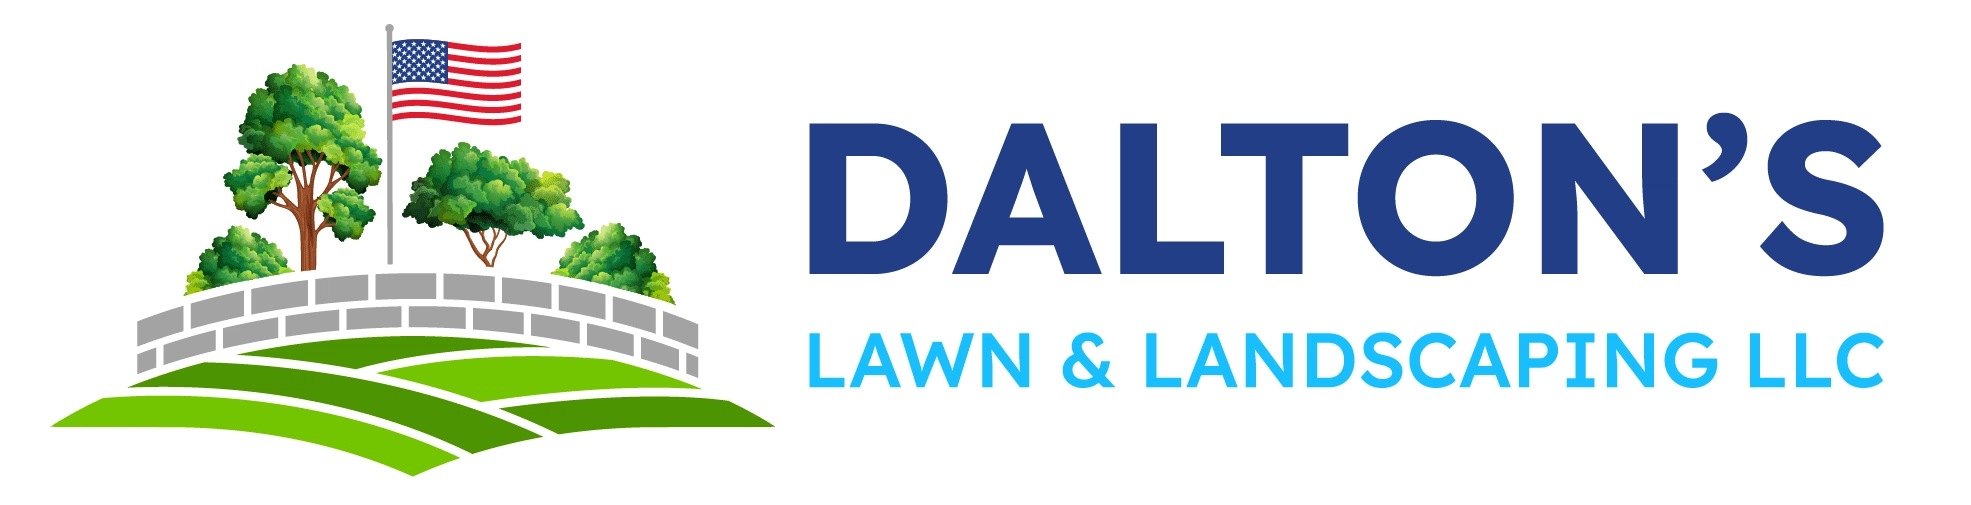 Dalton's Lawn & Landscaping Logo